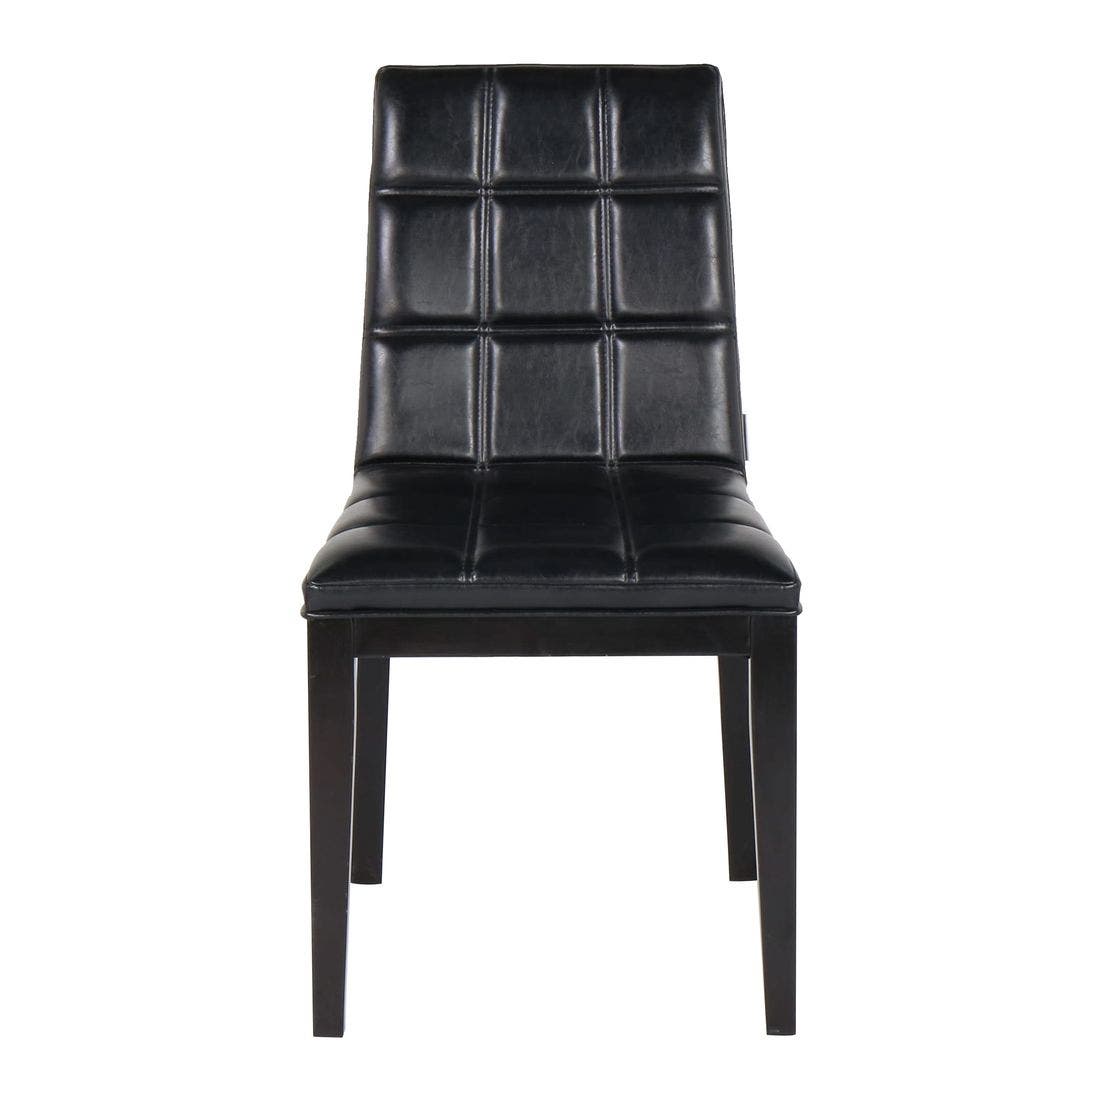 เก้าอี้ รุ่น Zevano สีดำ-02